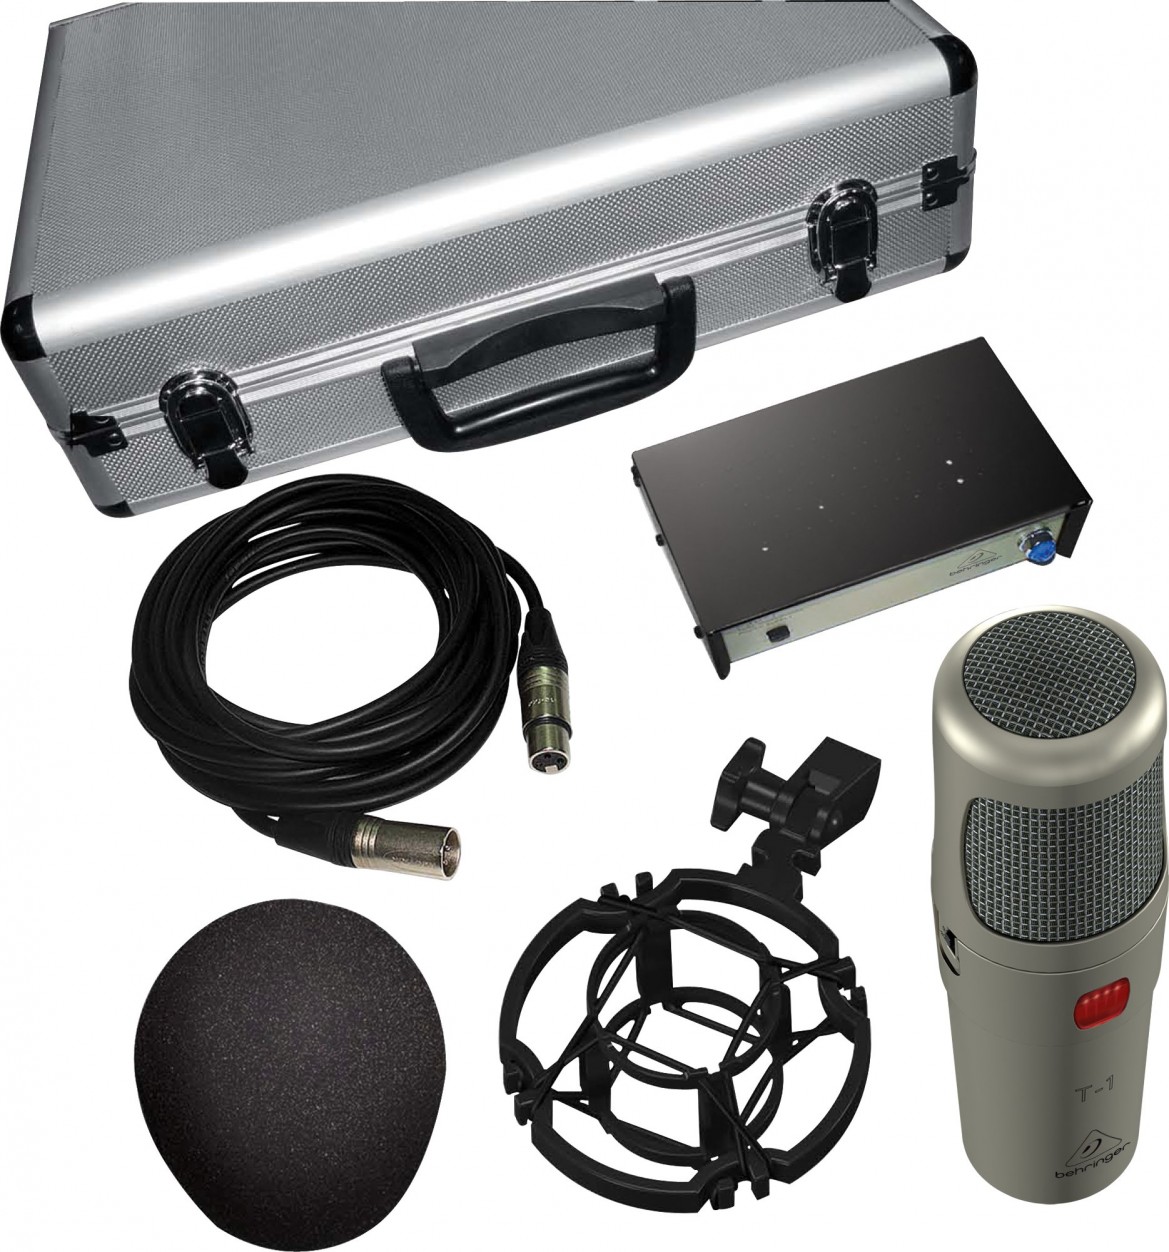 Behringer T-1 Studio Condenser Microphone ламповый студийный конденсаторный микрофон